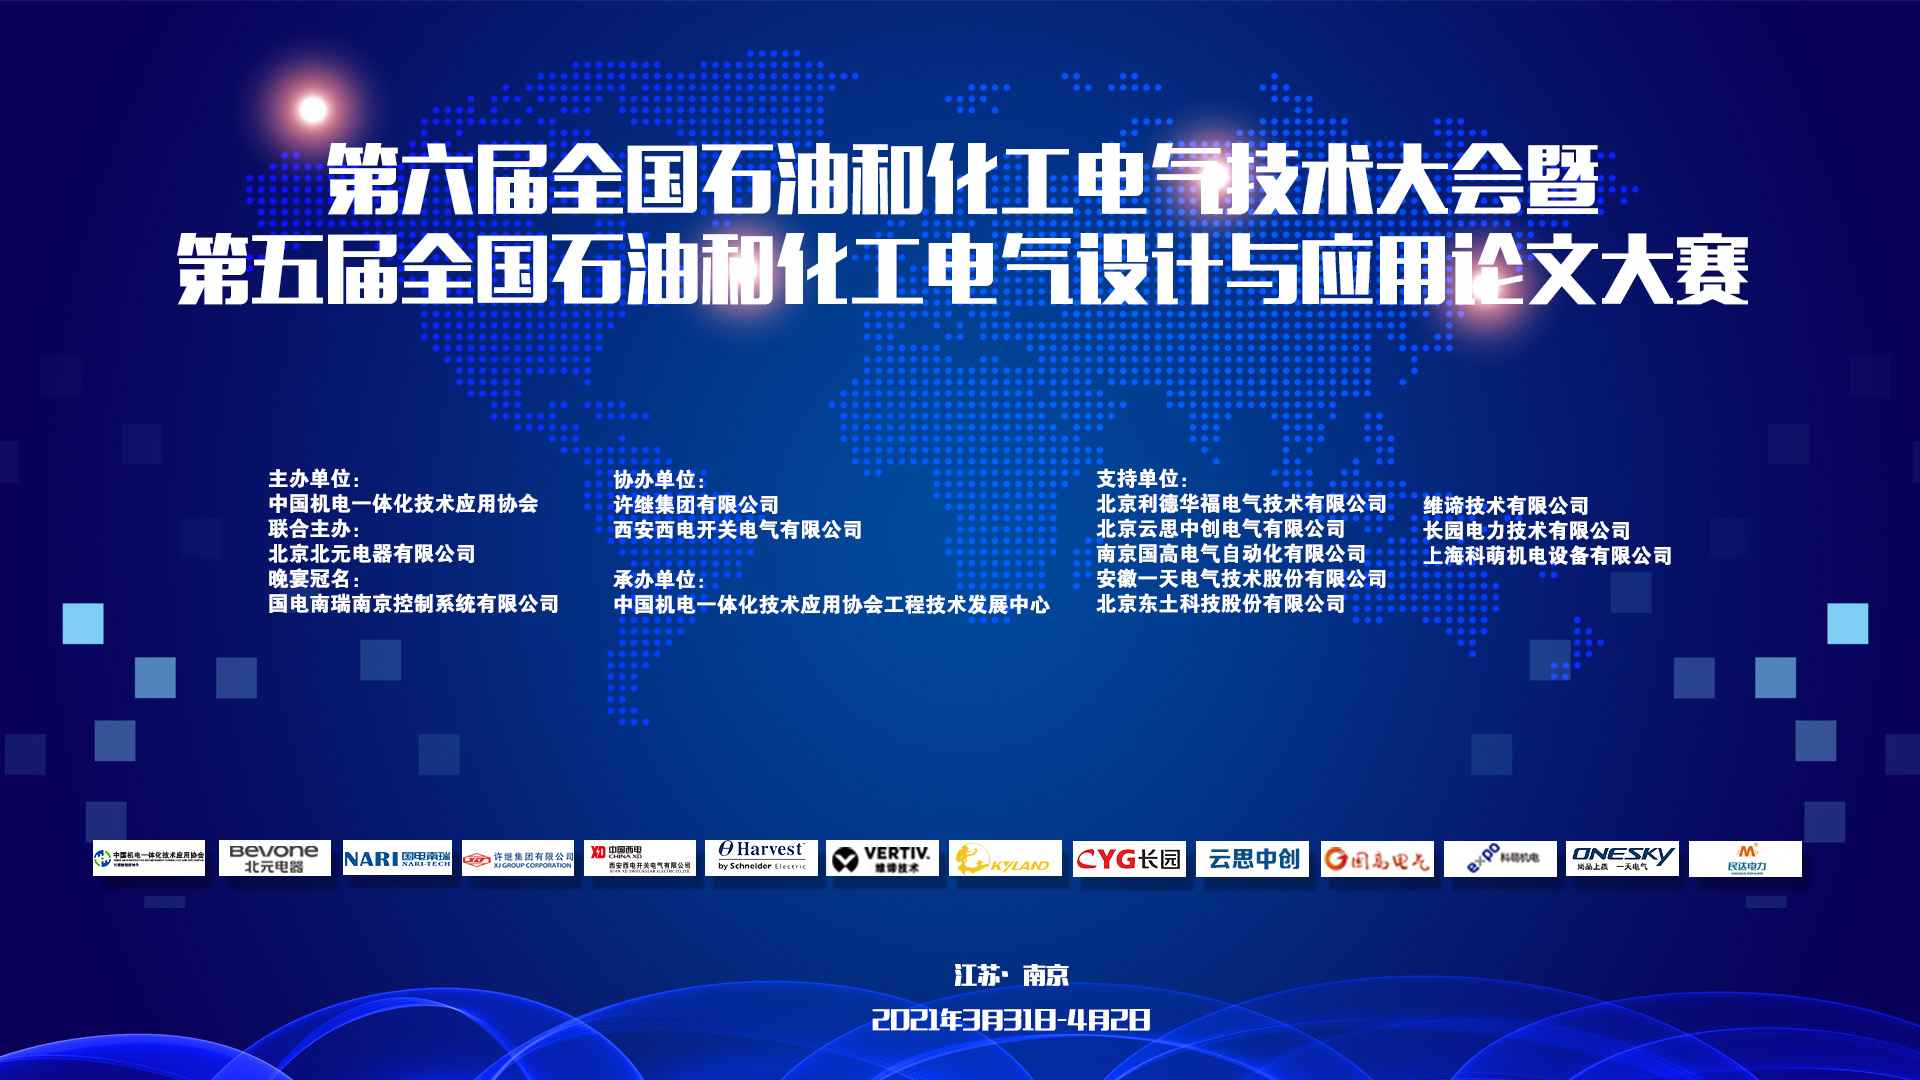 会议报道|第六届全国石油和化工电气技术大会在江苏南京盛大召开